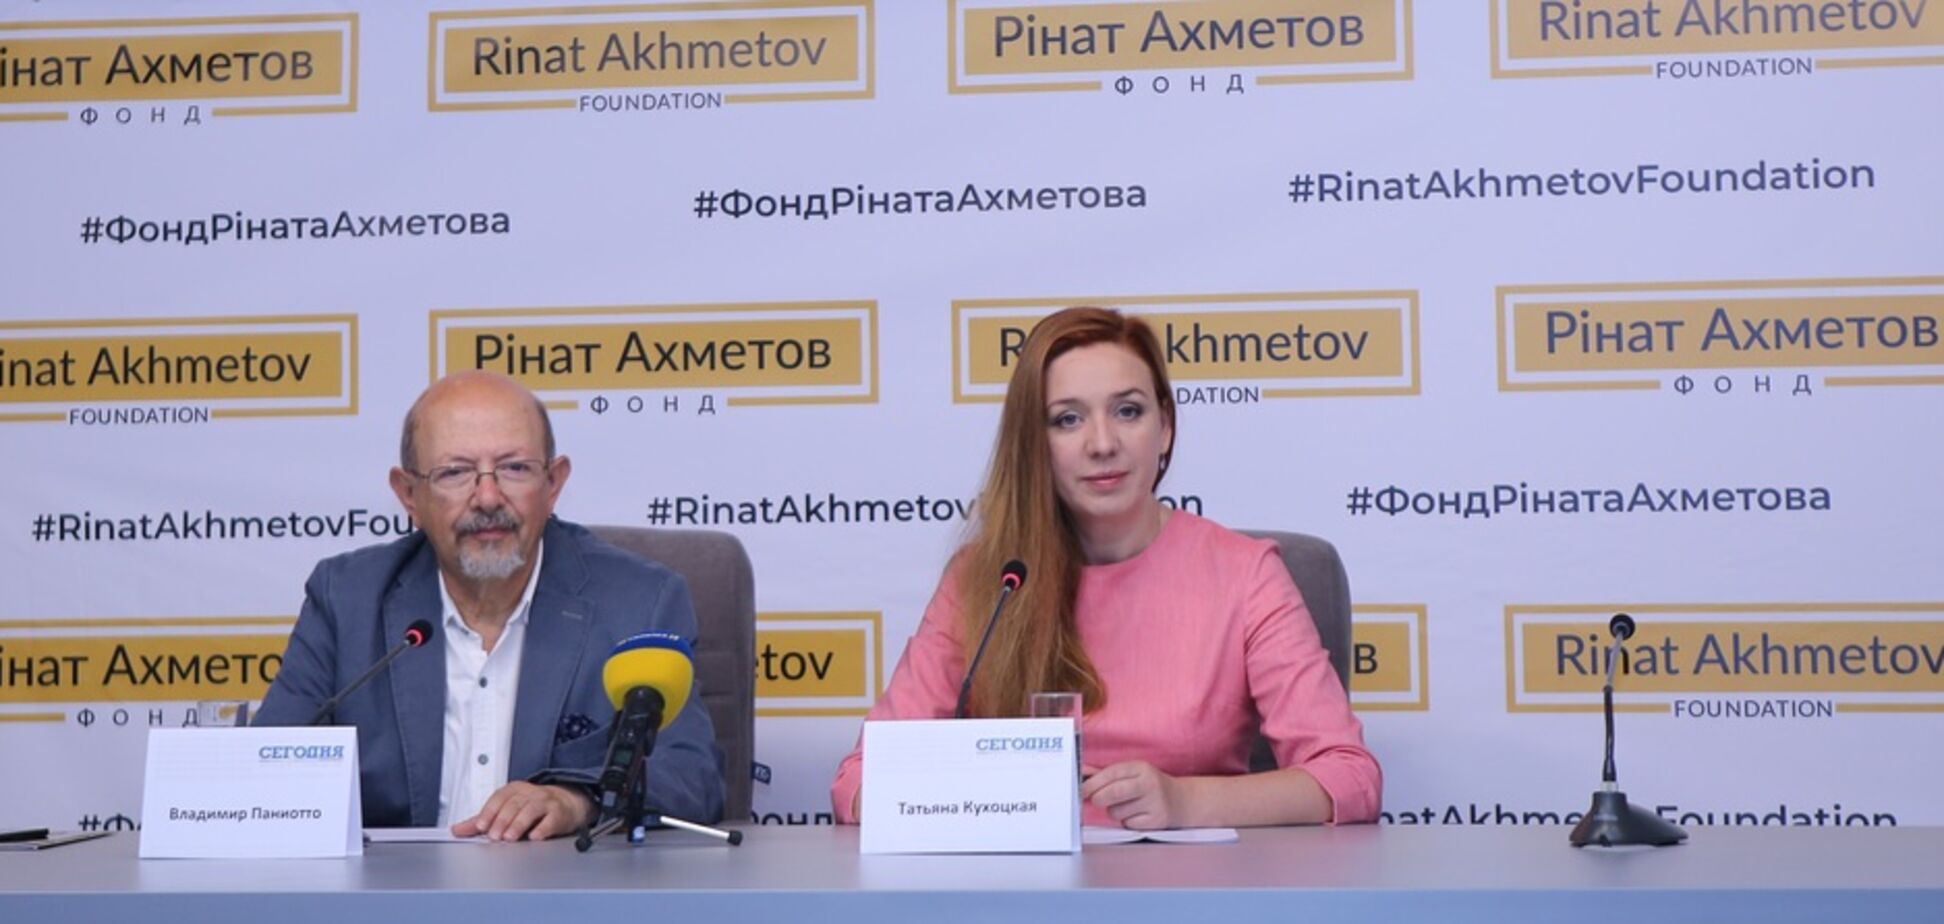 Фонд Ріната Ахметова залишається лідером благодійності в Україні – Всеукраїнський соцопитування